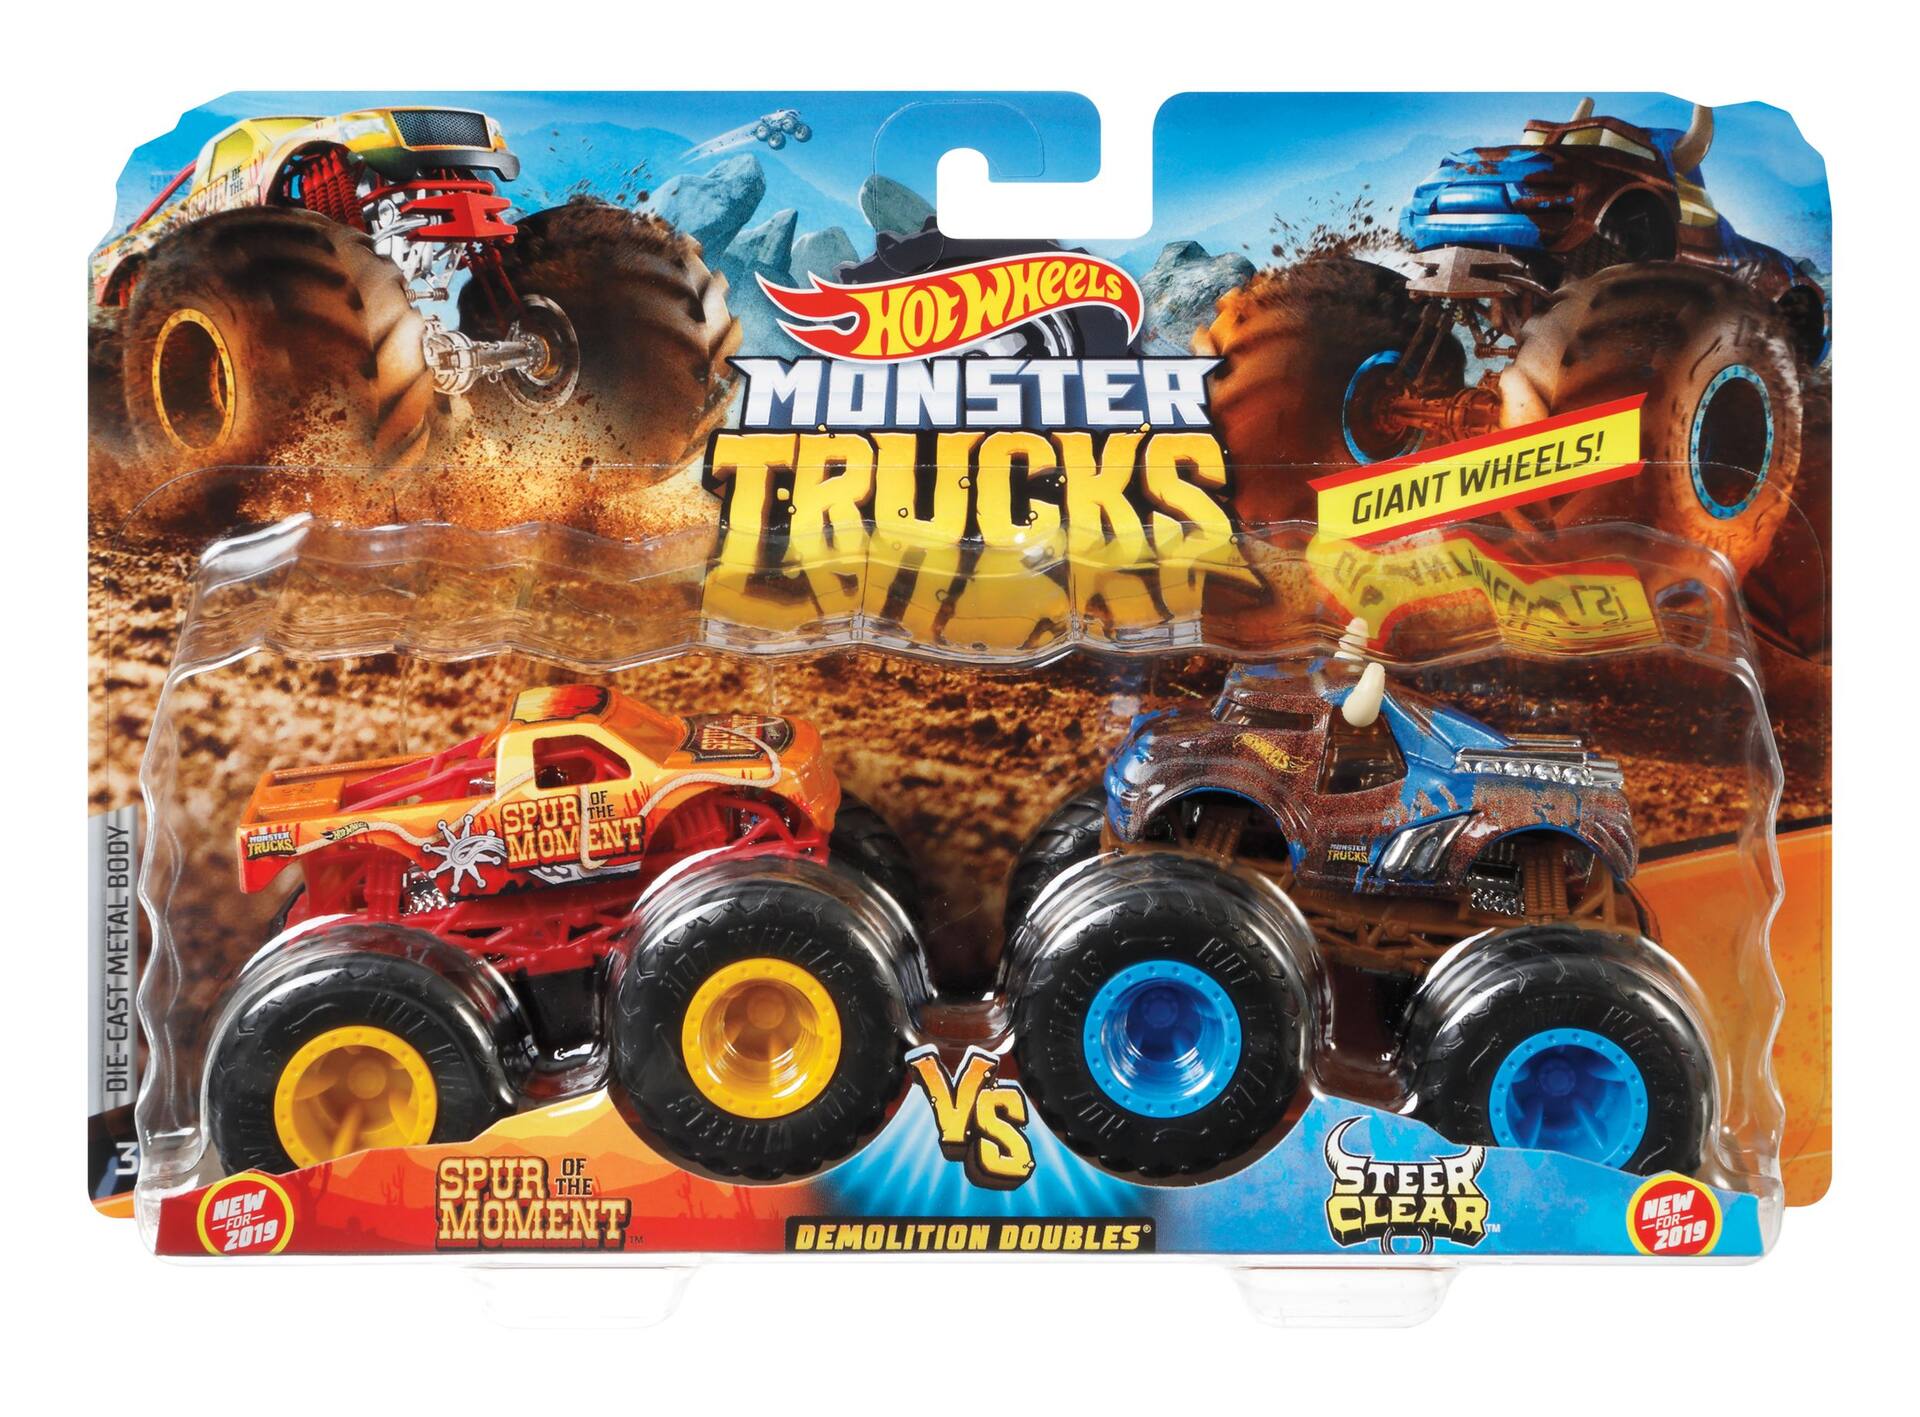 Hot Wheels Monster Trucks Demolition Doubles - Spur Of Moment vs